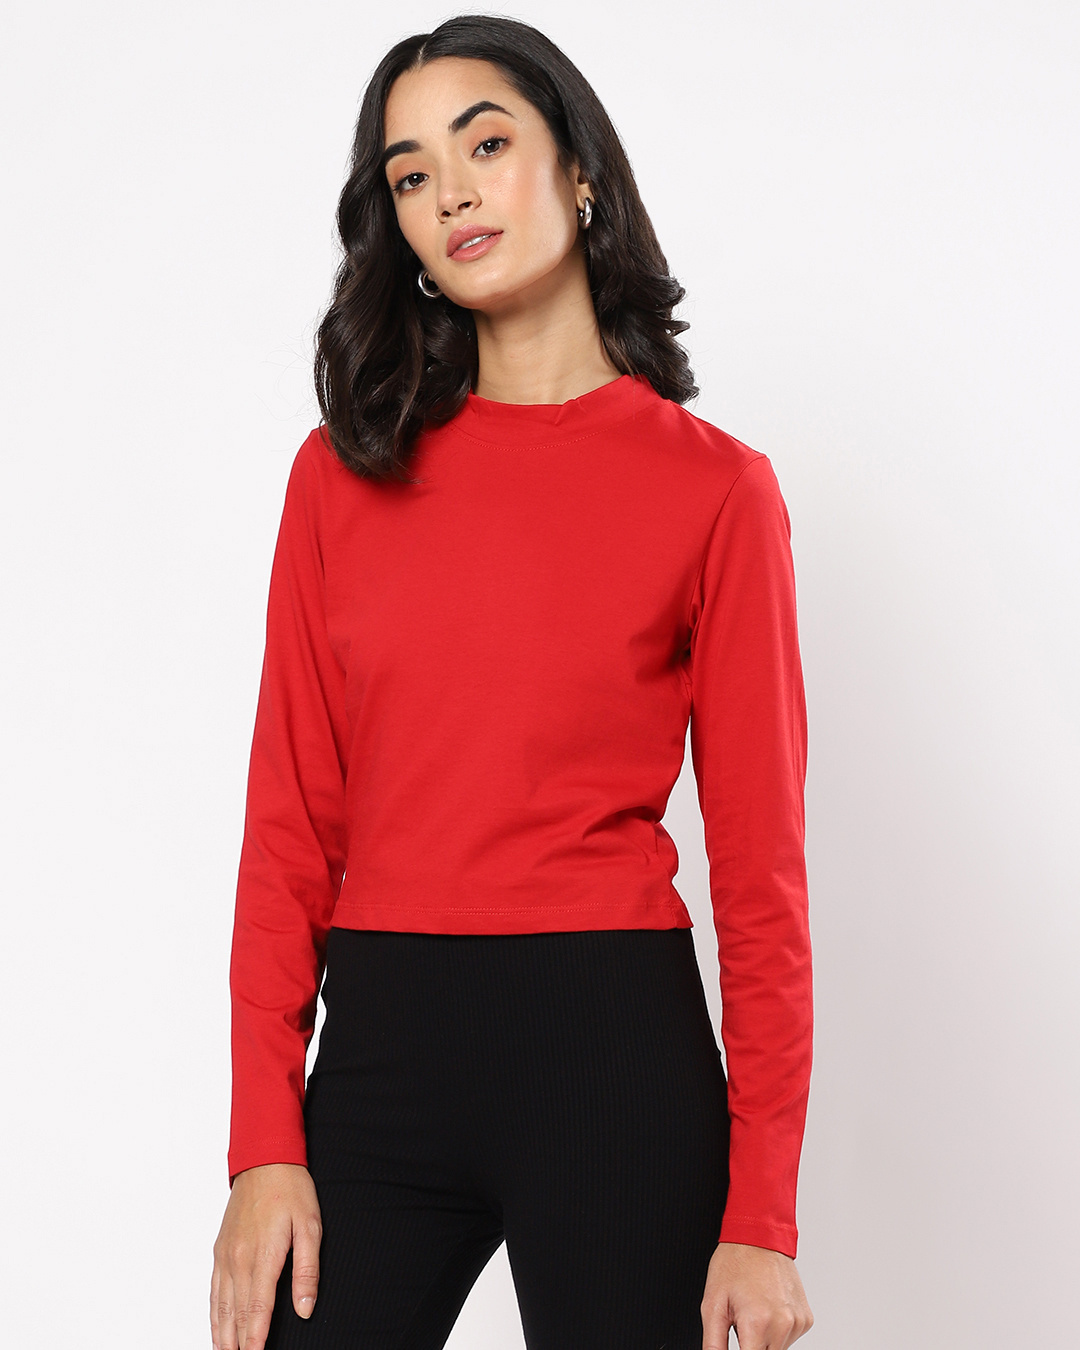 Shop Women's Bold Red Slim Fit Snug Top-Back